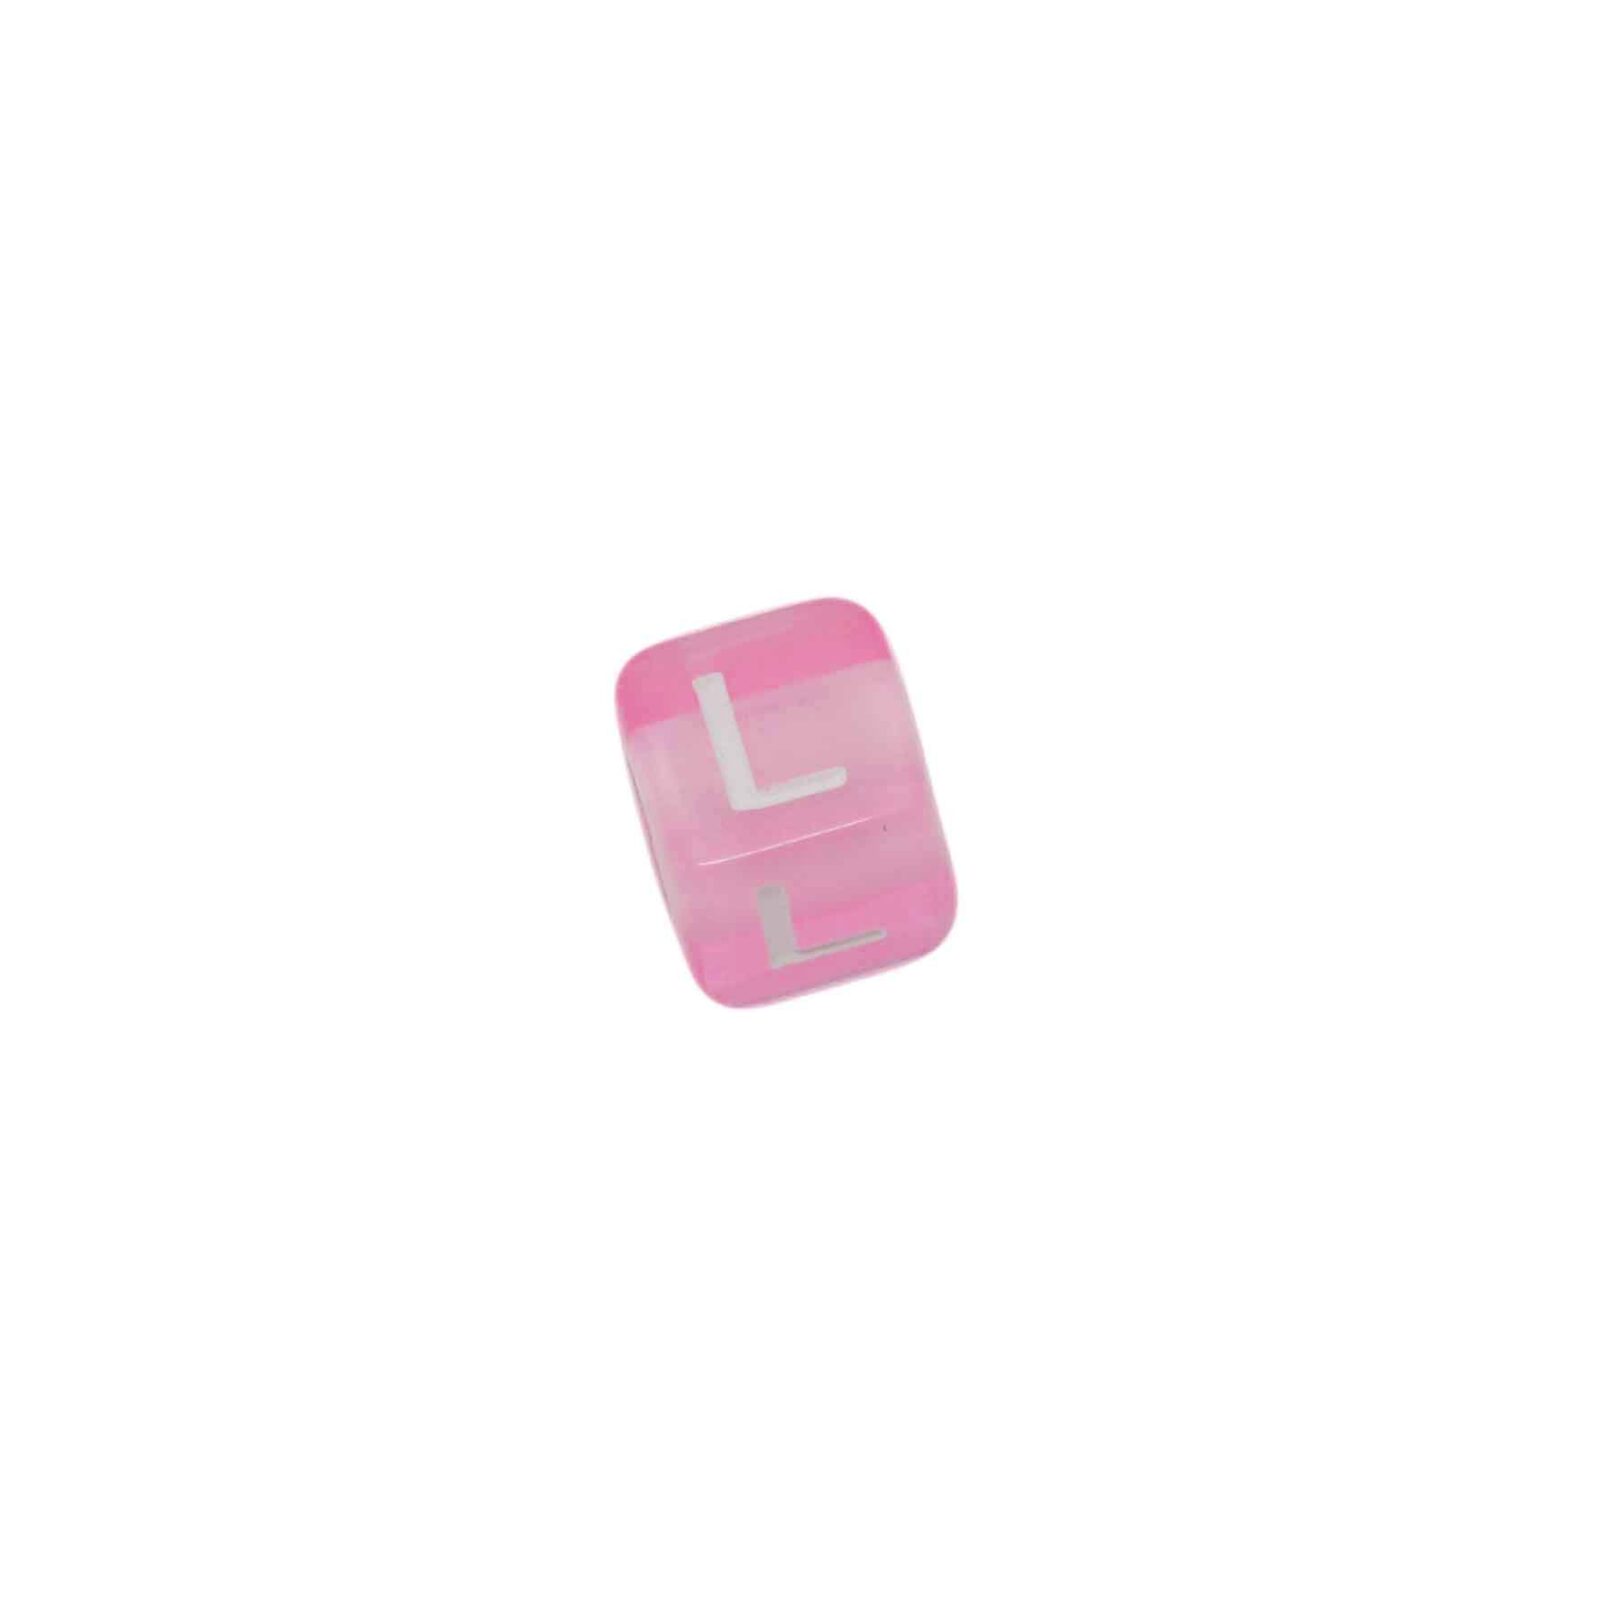 Roze letterkraal L